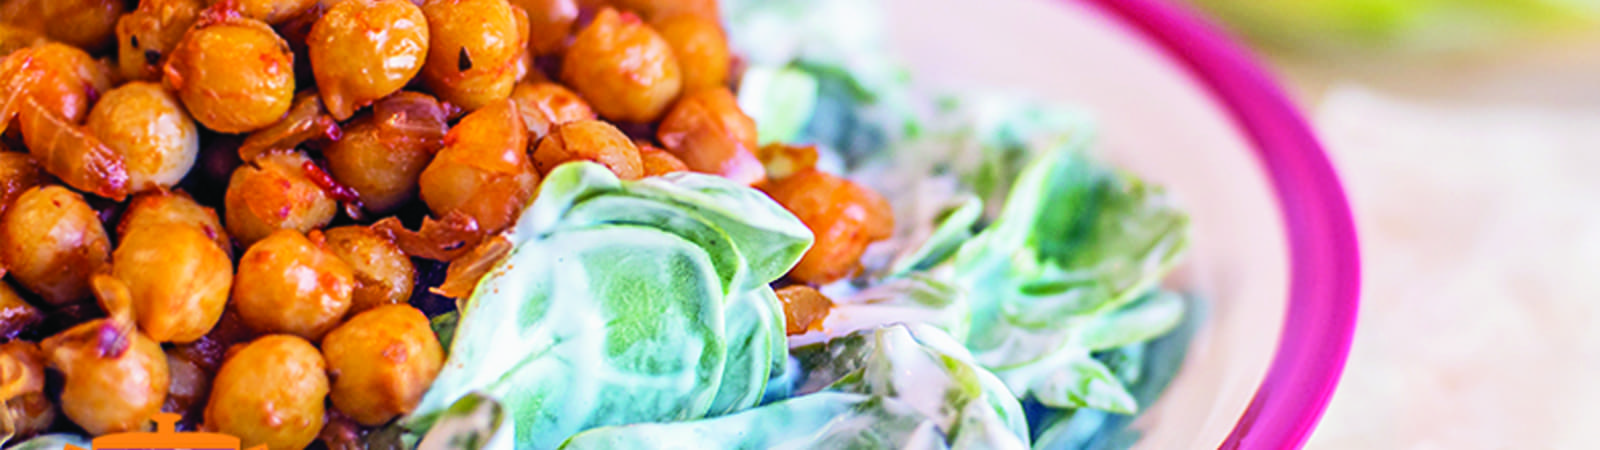 10 TL Altı Tarifler: Nohutlu Semizotu Salatası